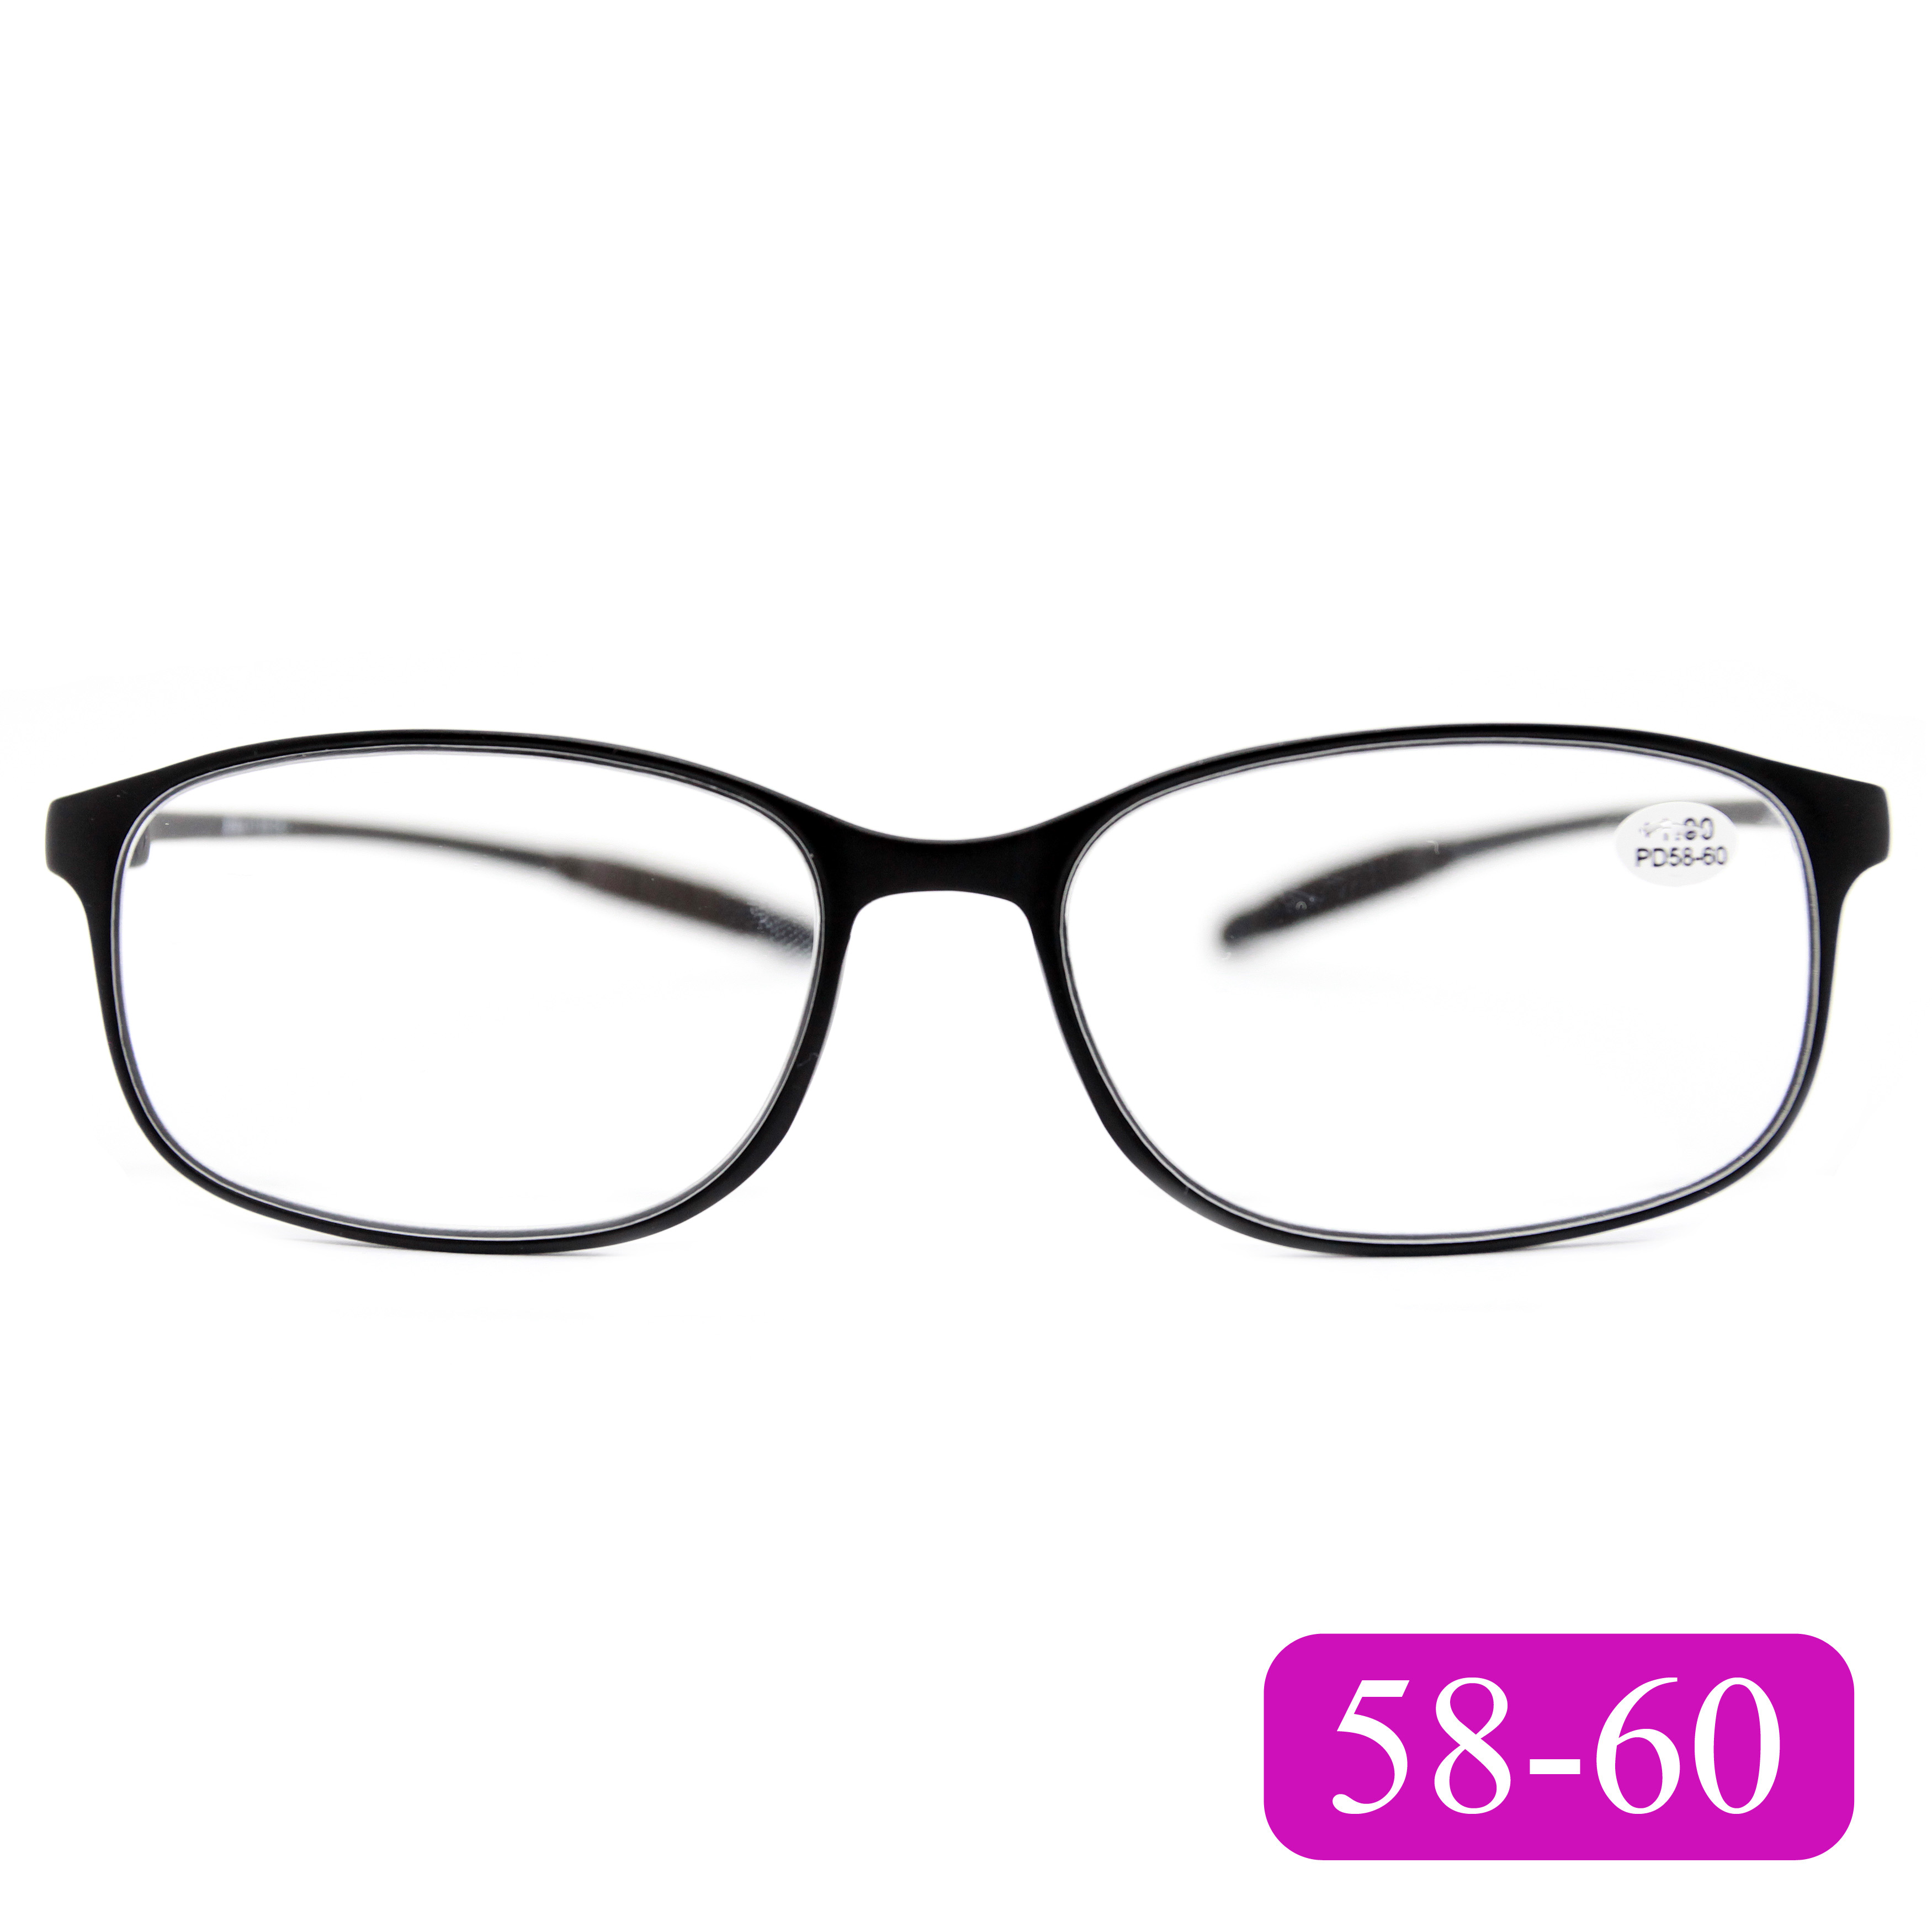 Готовые очки карбоновые TR259 +1,75, для чтения, без футляра, черный, РЦ 58-60